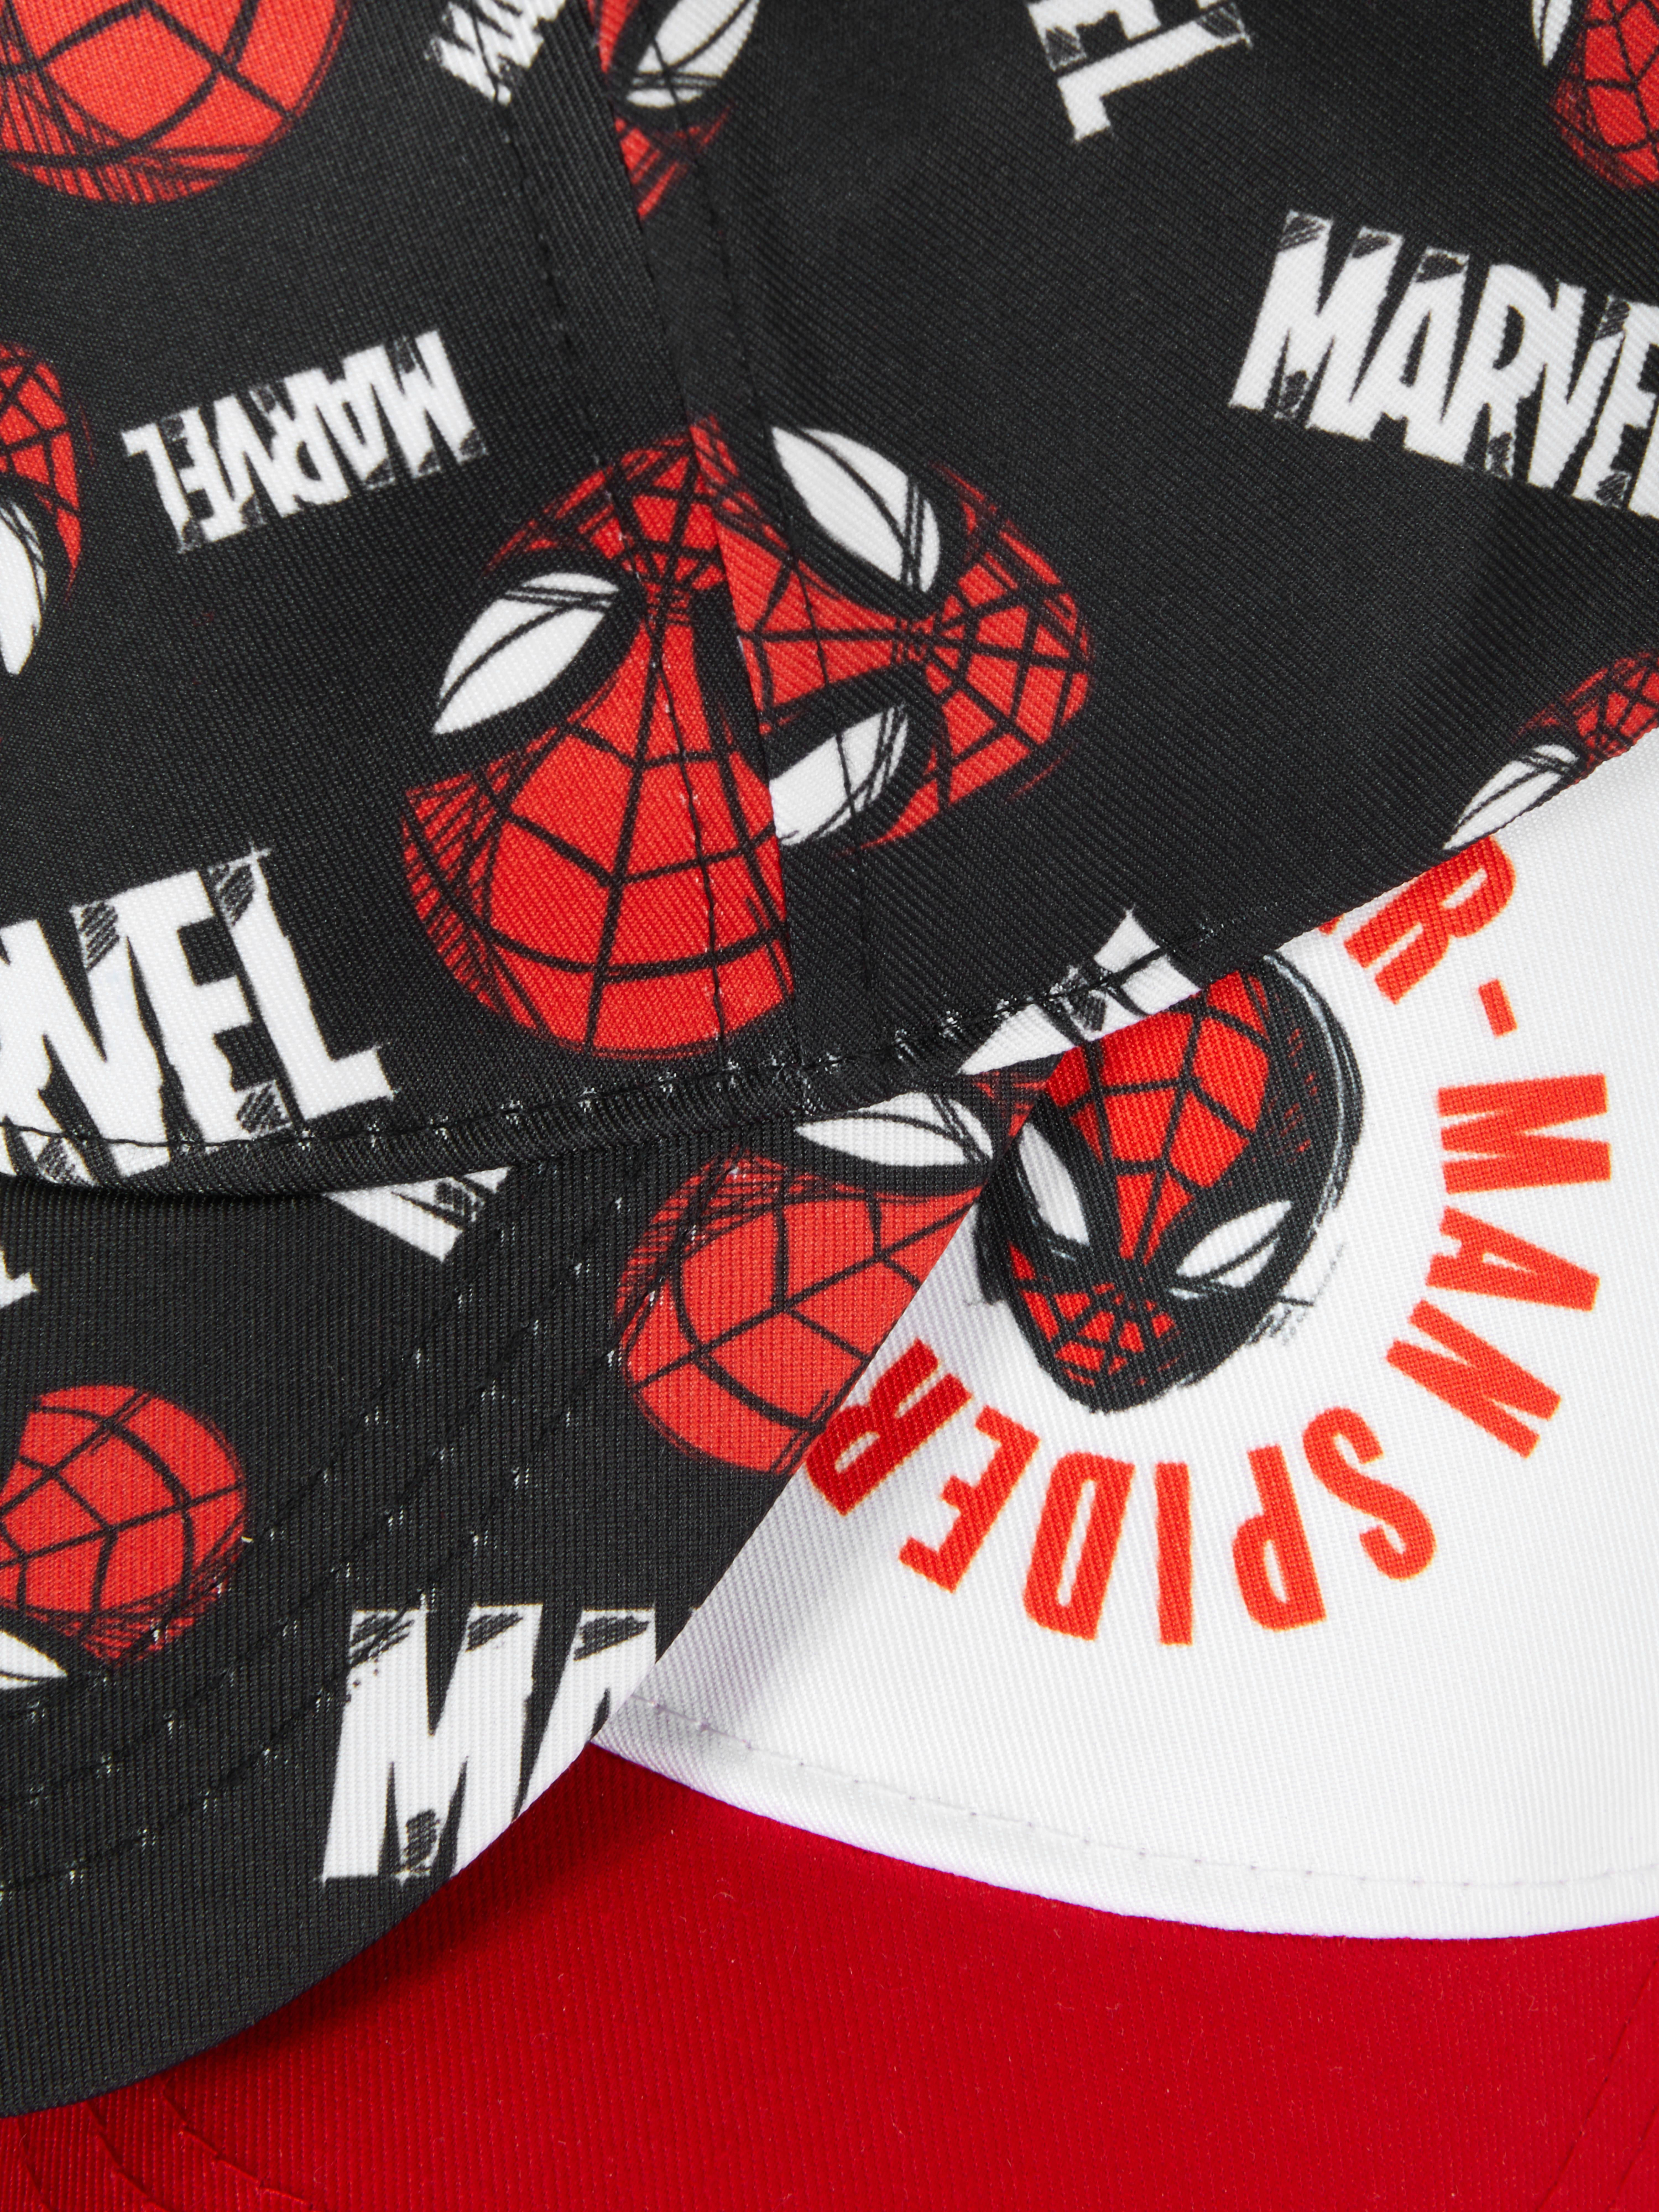 2pk Marvel Spider-Man Baseball Caps